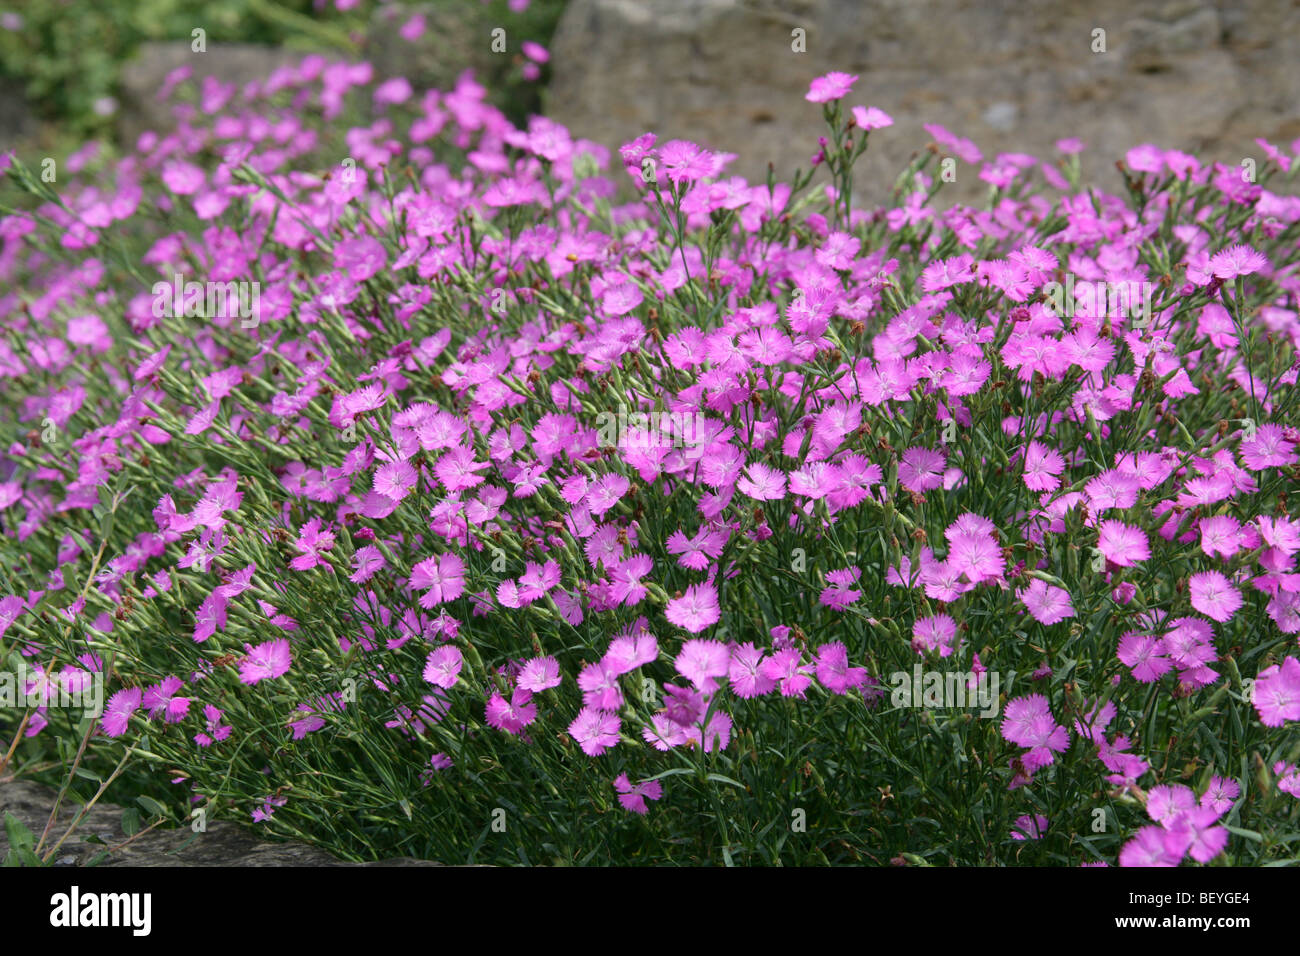 Rosa o Sequier irregulares de color rosa, Dianthus seguieri, Caryophyllaceae, al suroeste de Europa, Asia templada Foto de stock